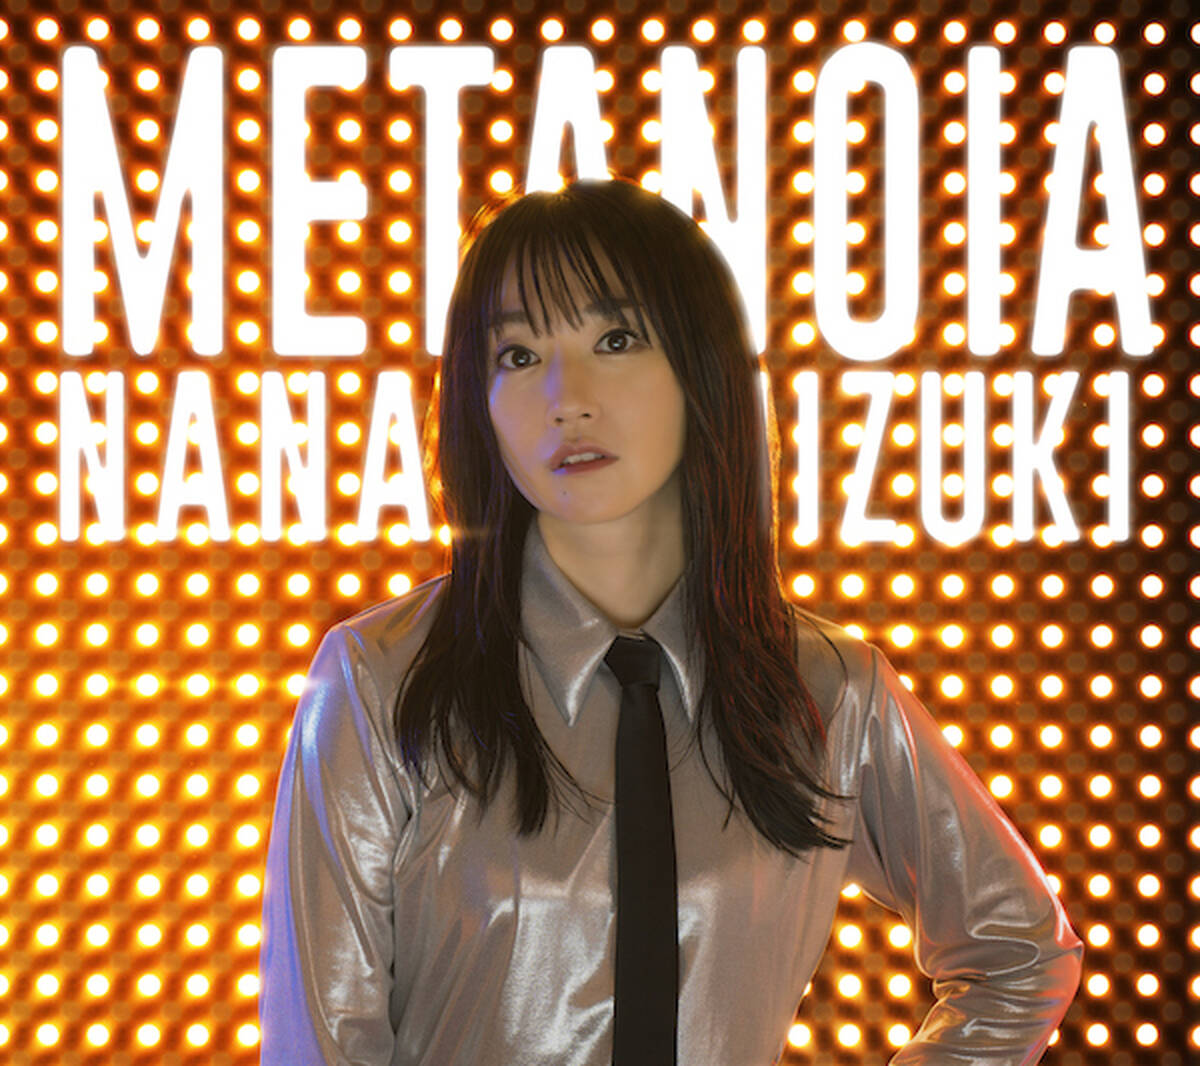 水樹奈々 7 17発売の新曲 Metanoia 本人コメントが到着 サブスクにて楽曲のストリーミング配信がスタート アキバ総研